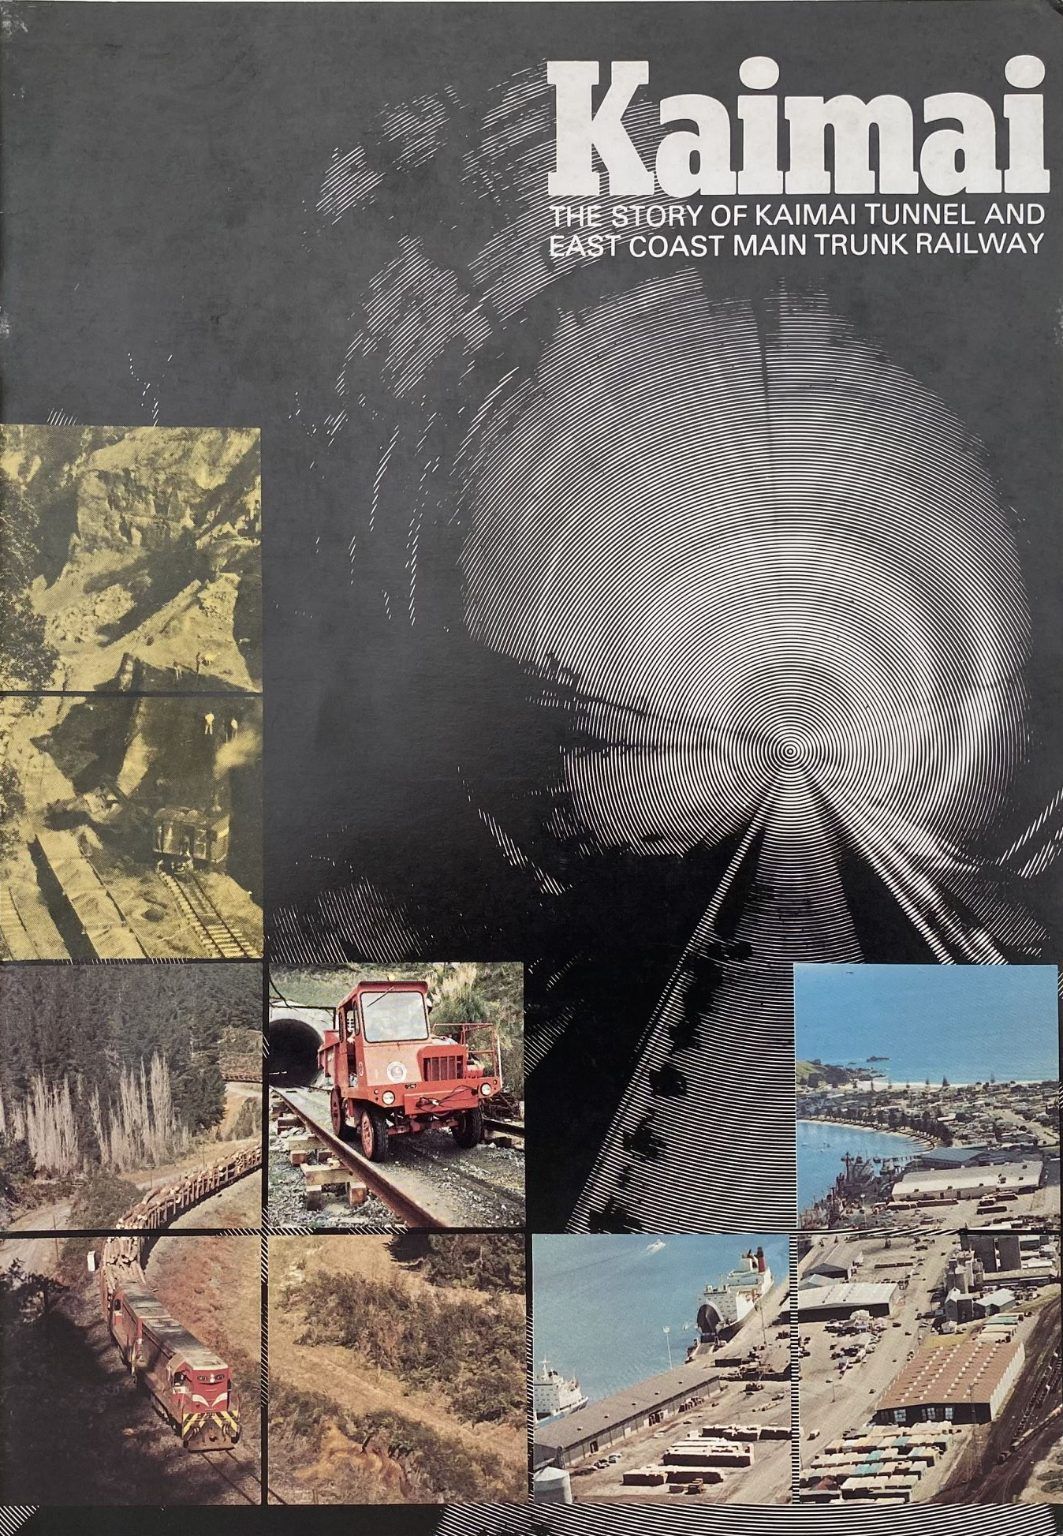 KAIMAI: The Story of Kaimai Tunnel and the East Coast Main Trunk Railway